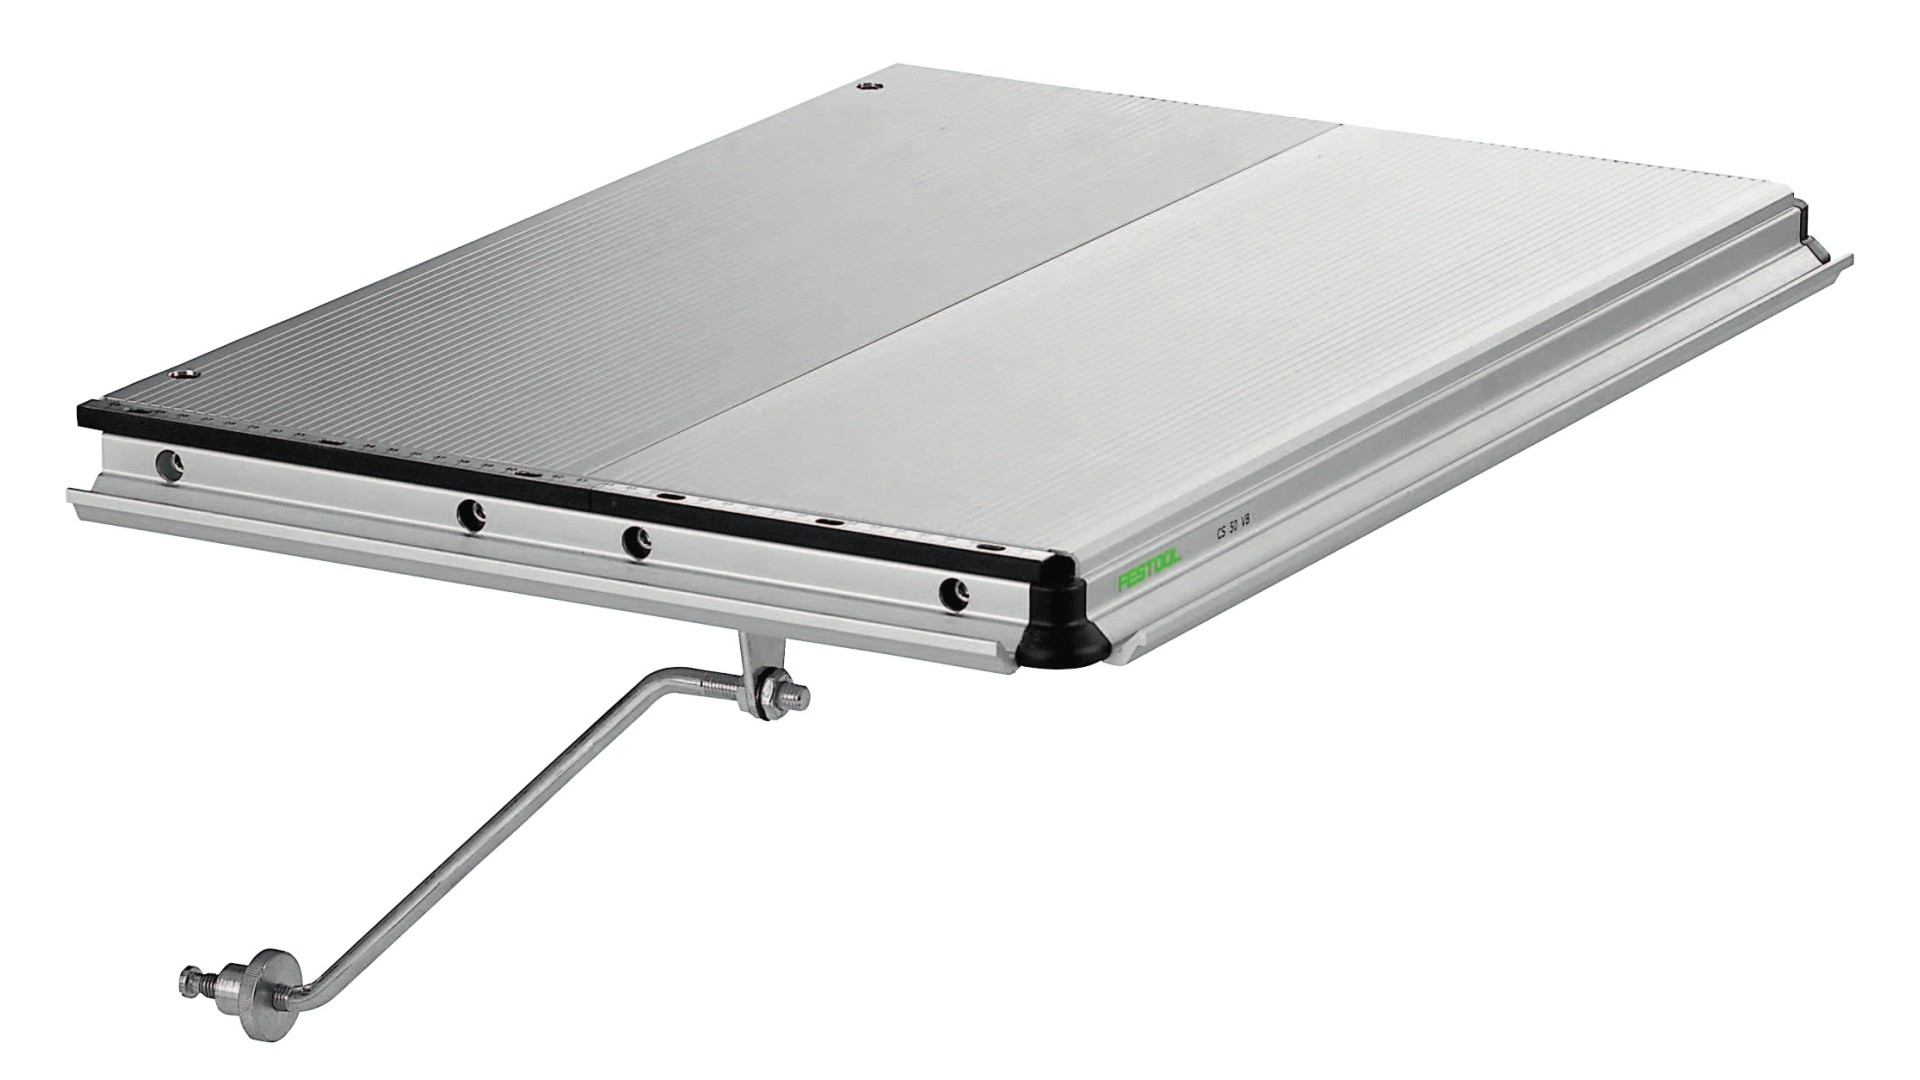 Расширитель для стола Festool VB-CMS 493822 расширитель оконный пвх whs 1500 мм